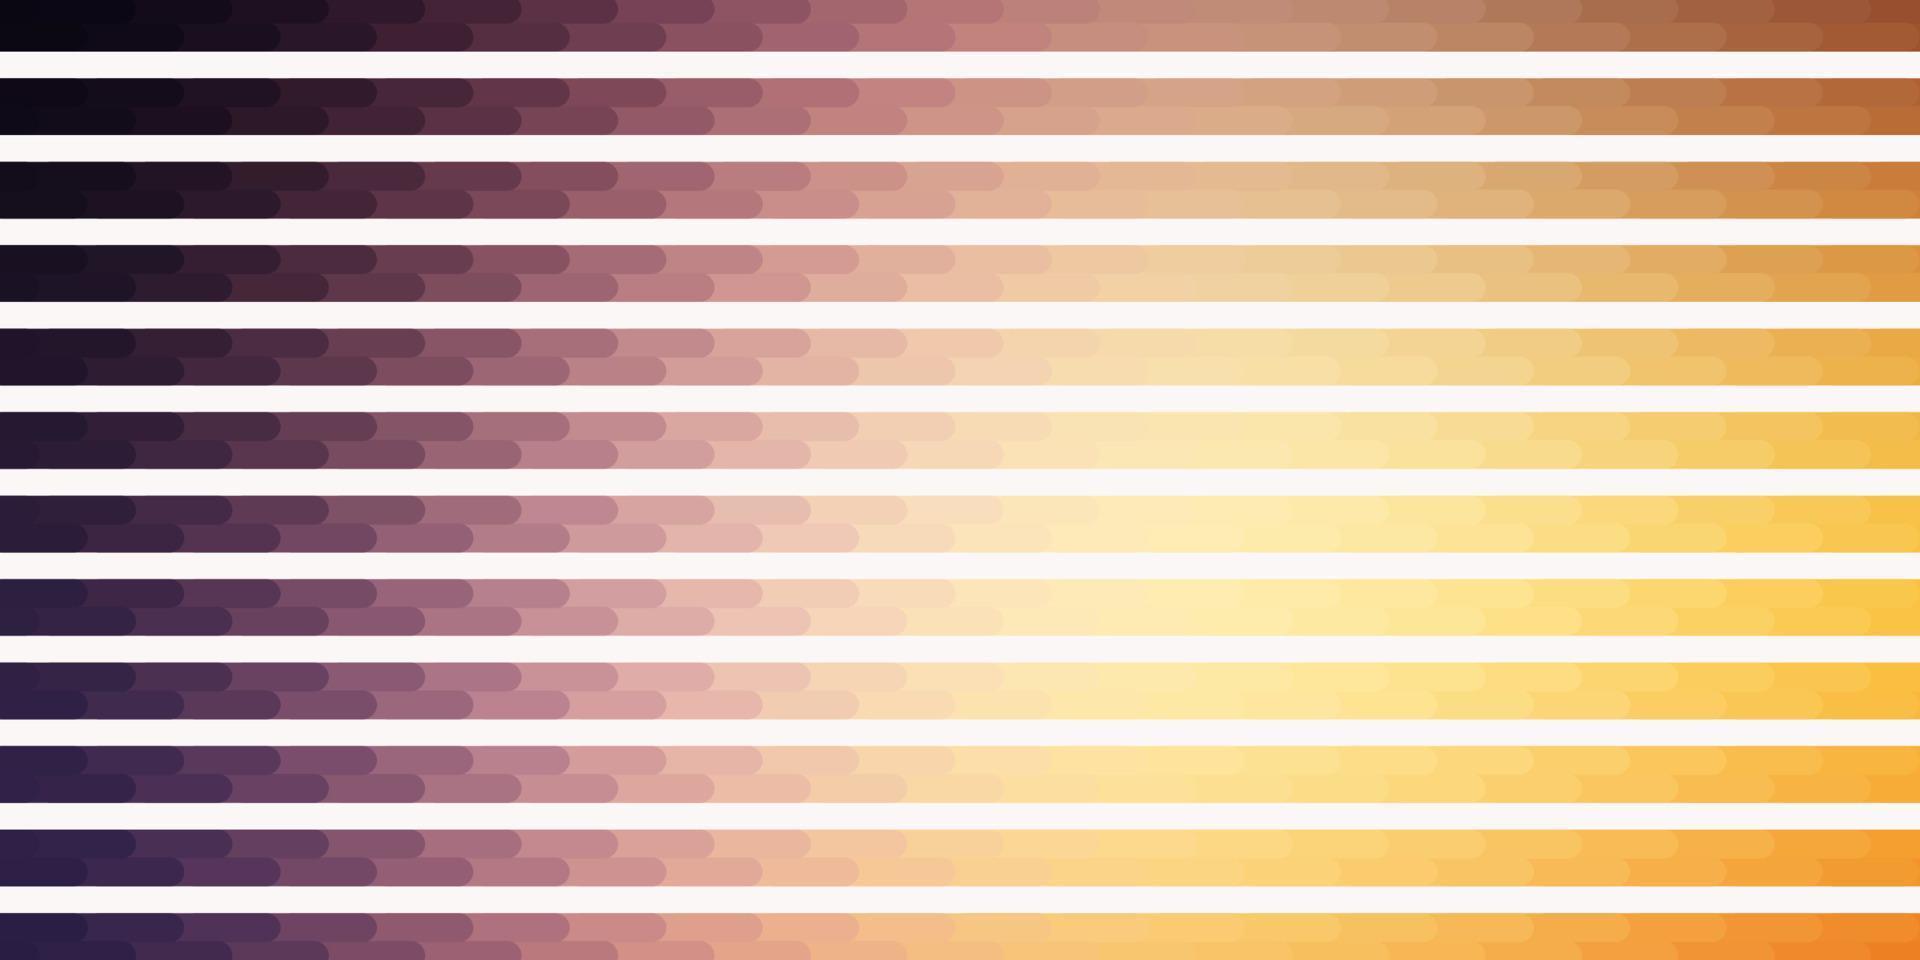 sfondo vettoriale rosa chiaro, giallo con linee.